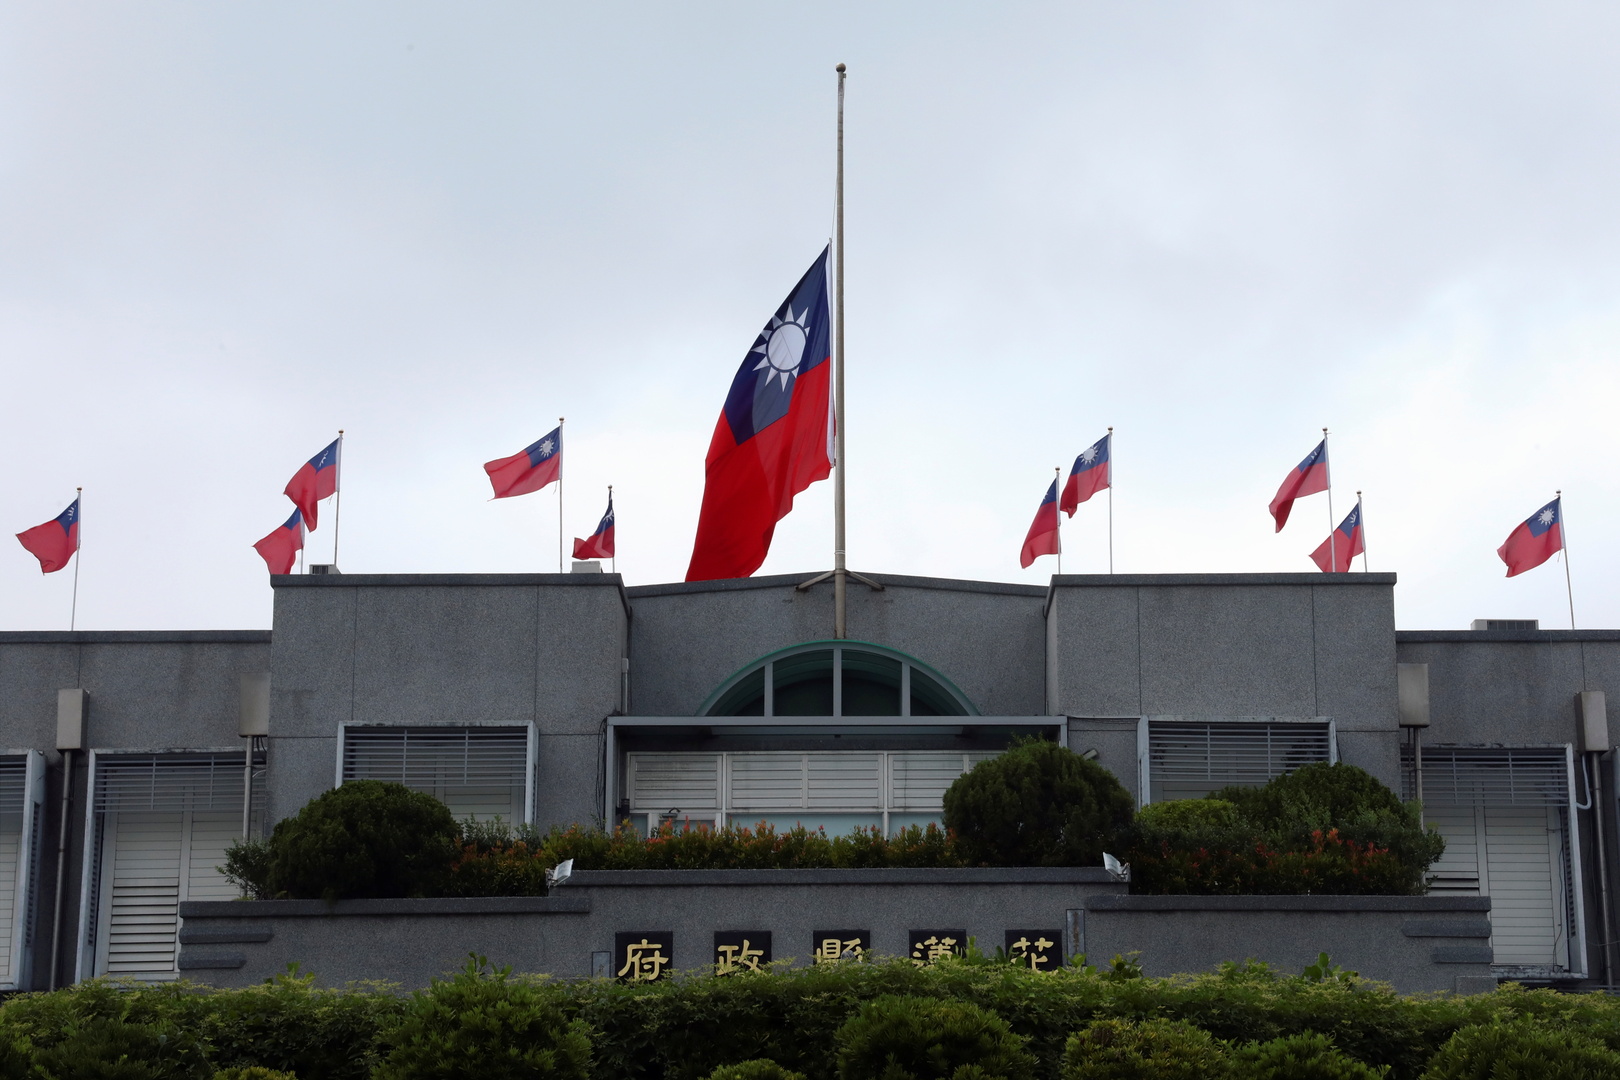 تايوان تعلن رصد 11 طائرة صينية في منطقة دفاعها